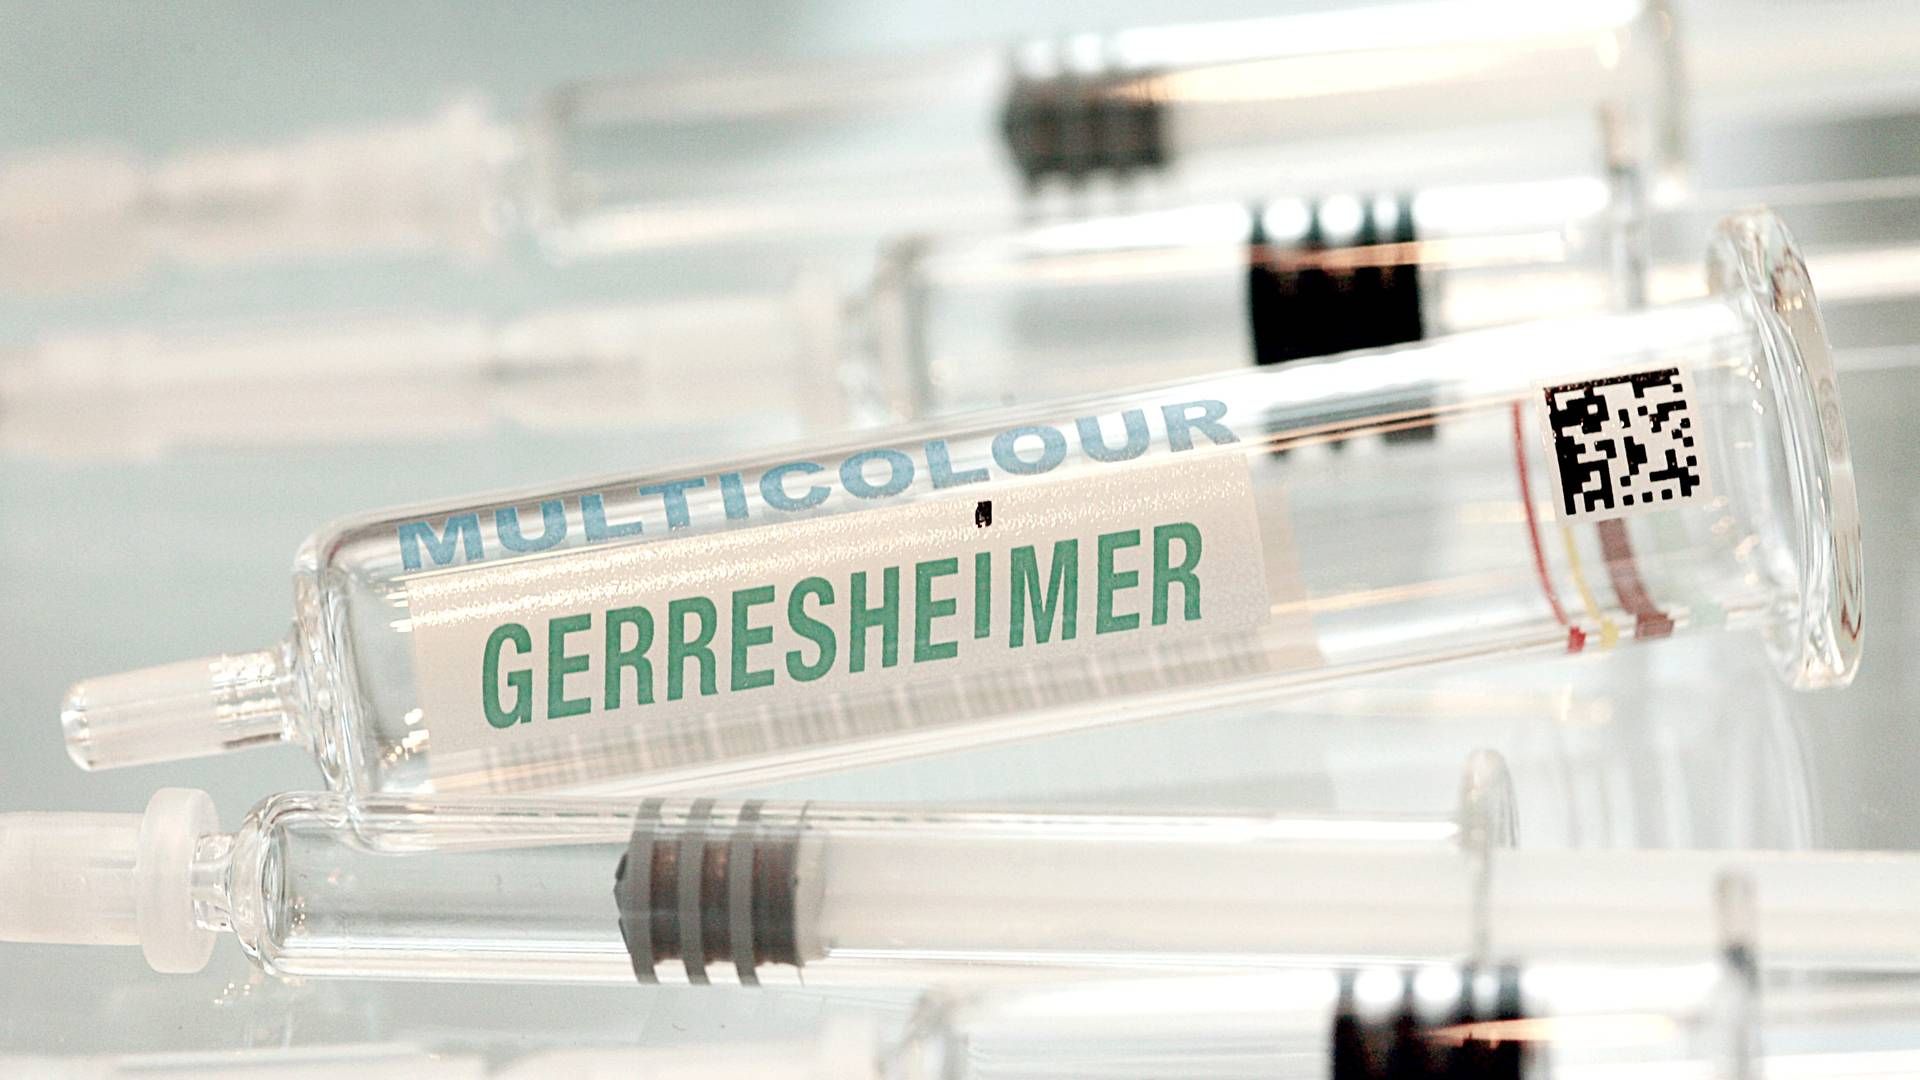 Gerresheimer hjælper medicinalindustrien med pakning og produktion af udstyr til medicin. | Foto: David Ebener/AP/Ritzau Scanpix